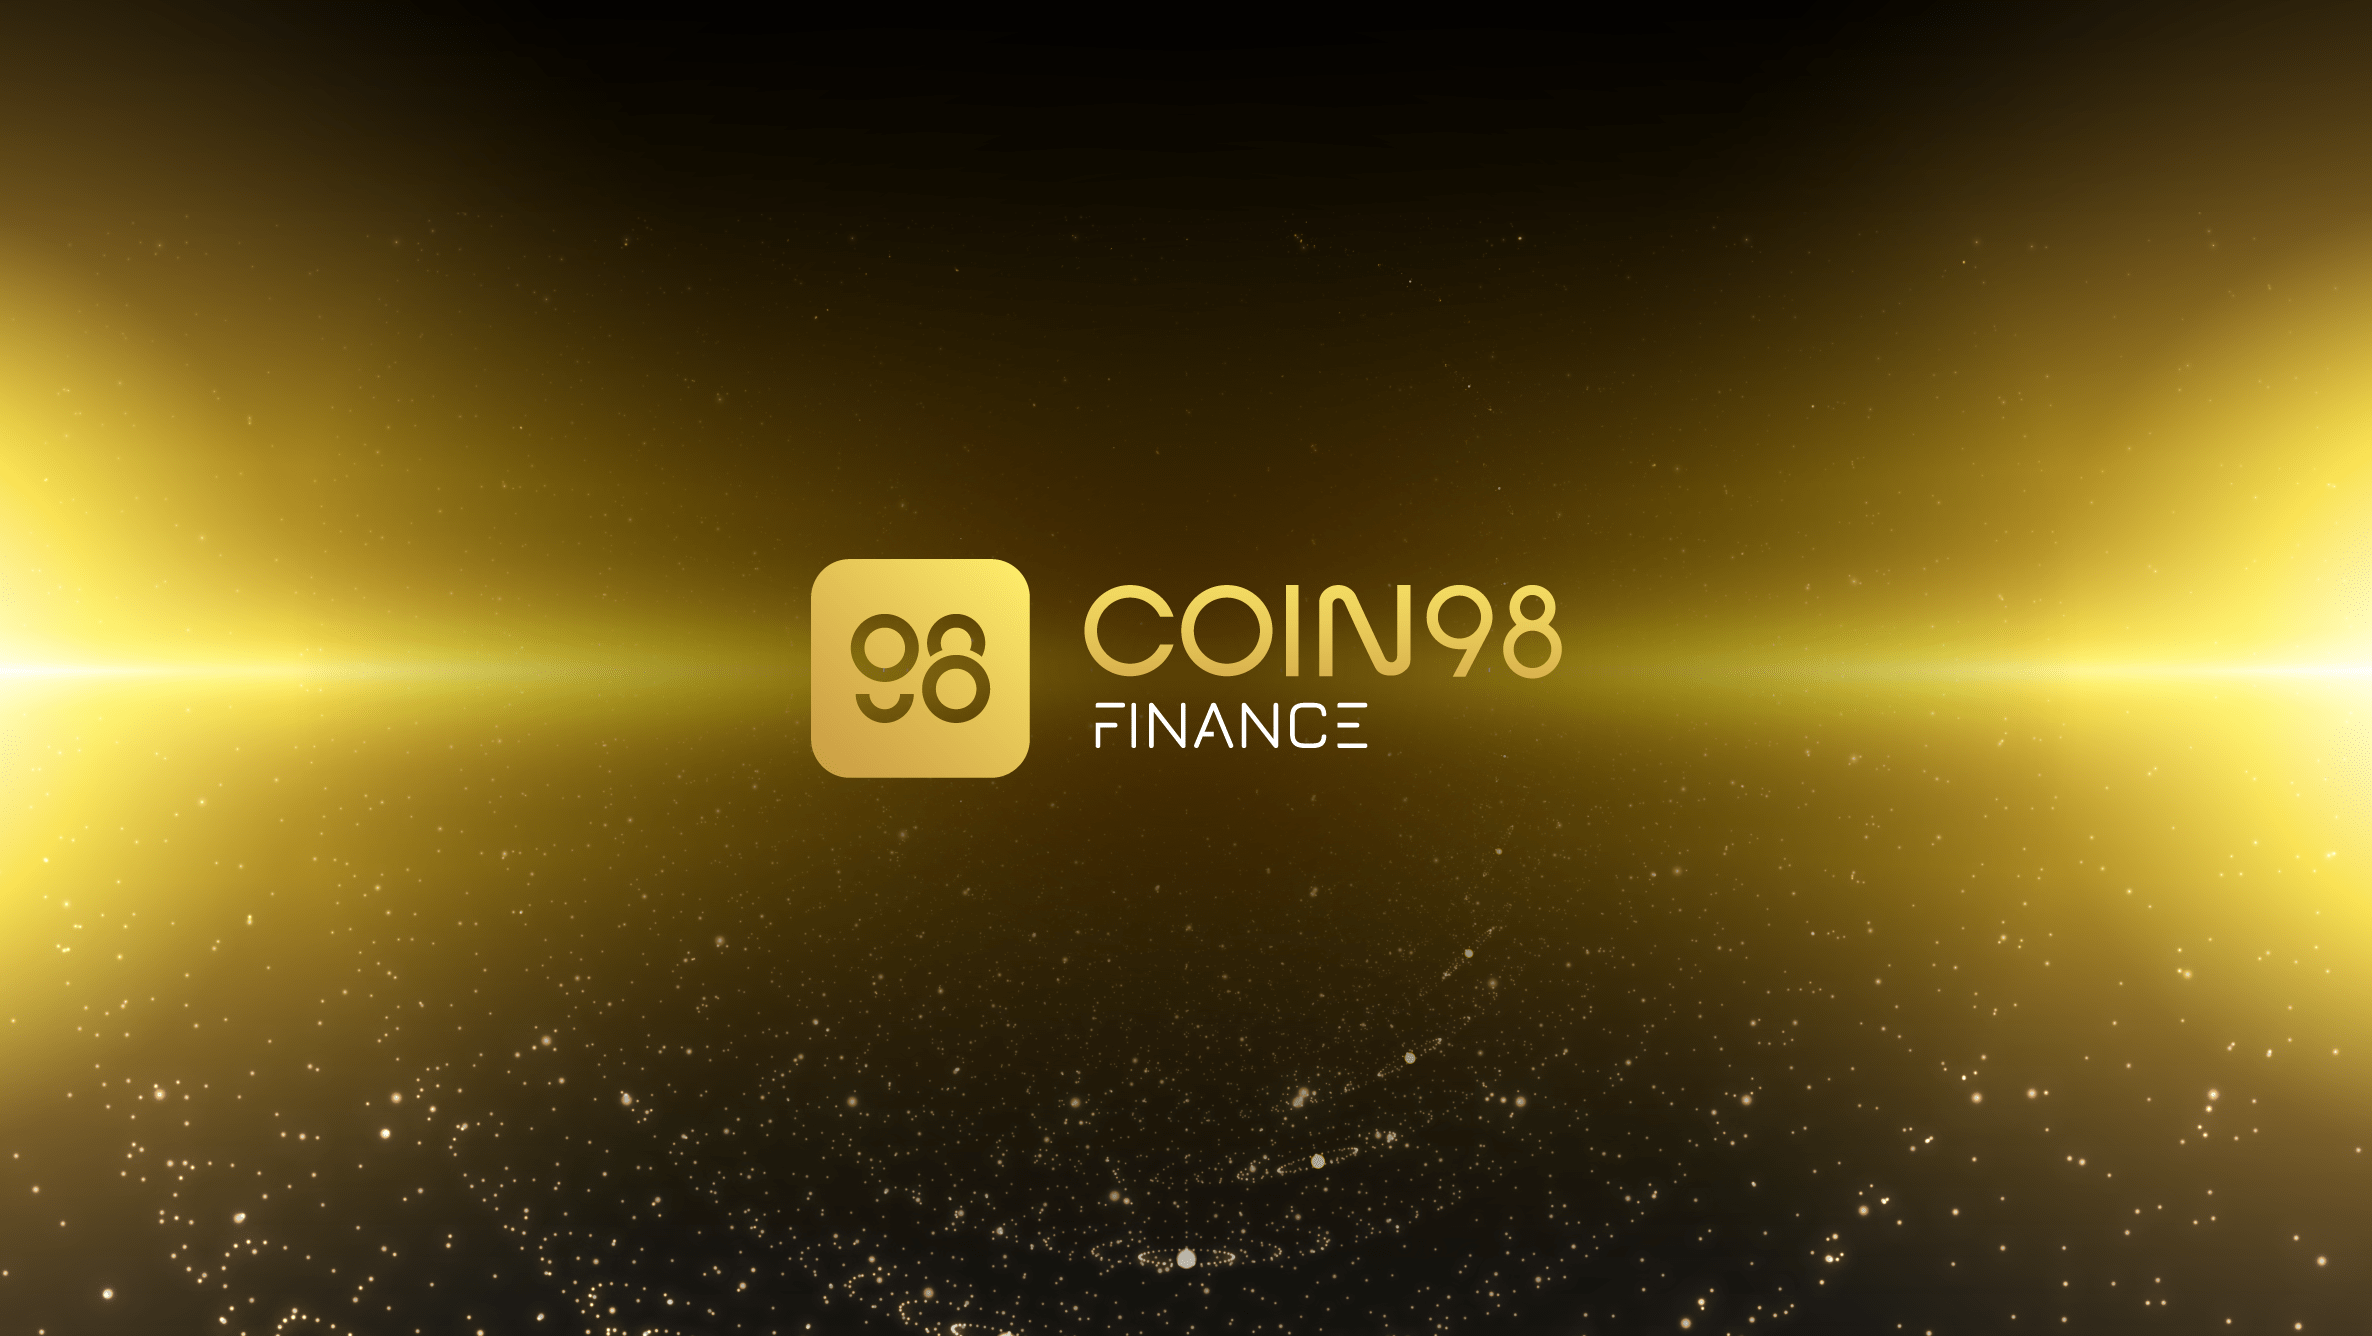 c98 coin geleceği 2021-2025, c98 coin fiyat tahmini 4